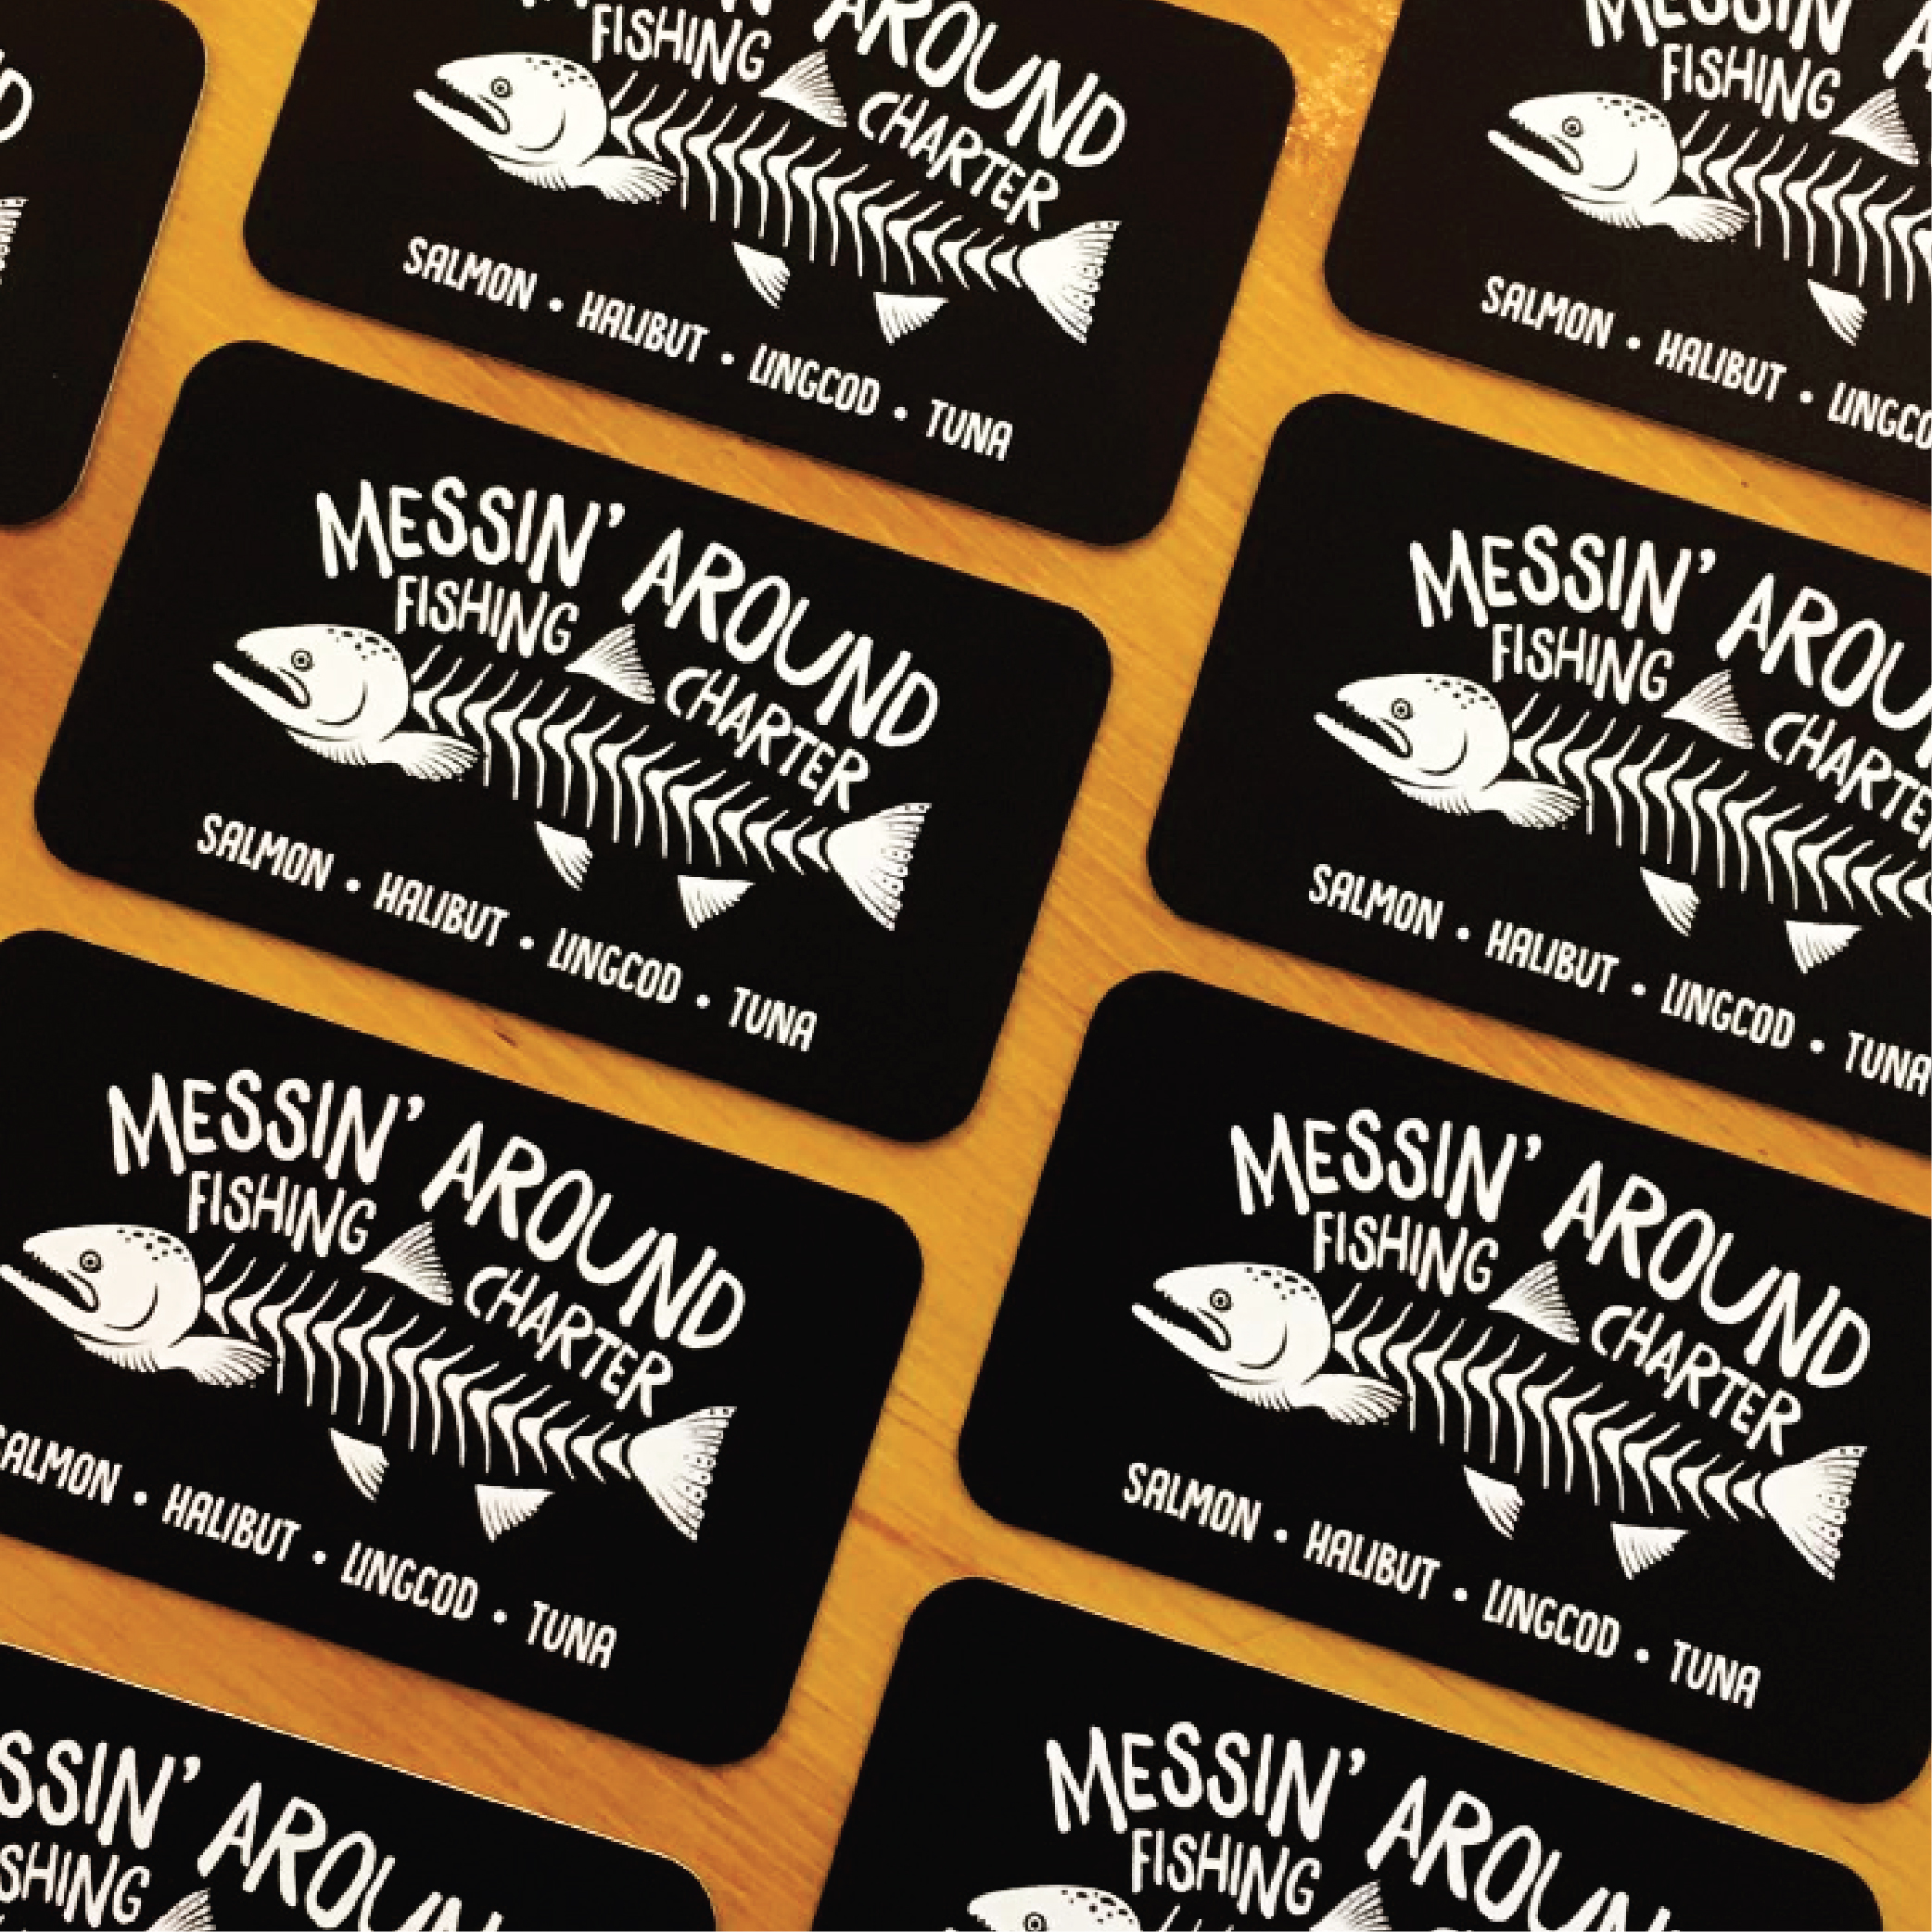 Messin’ Around Fishing Charter